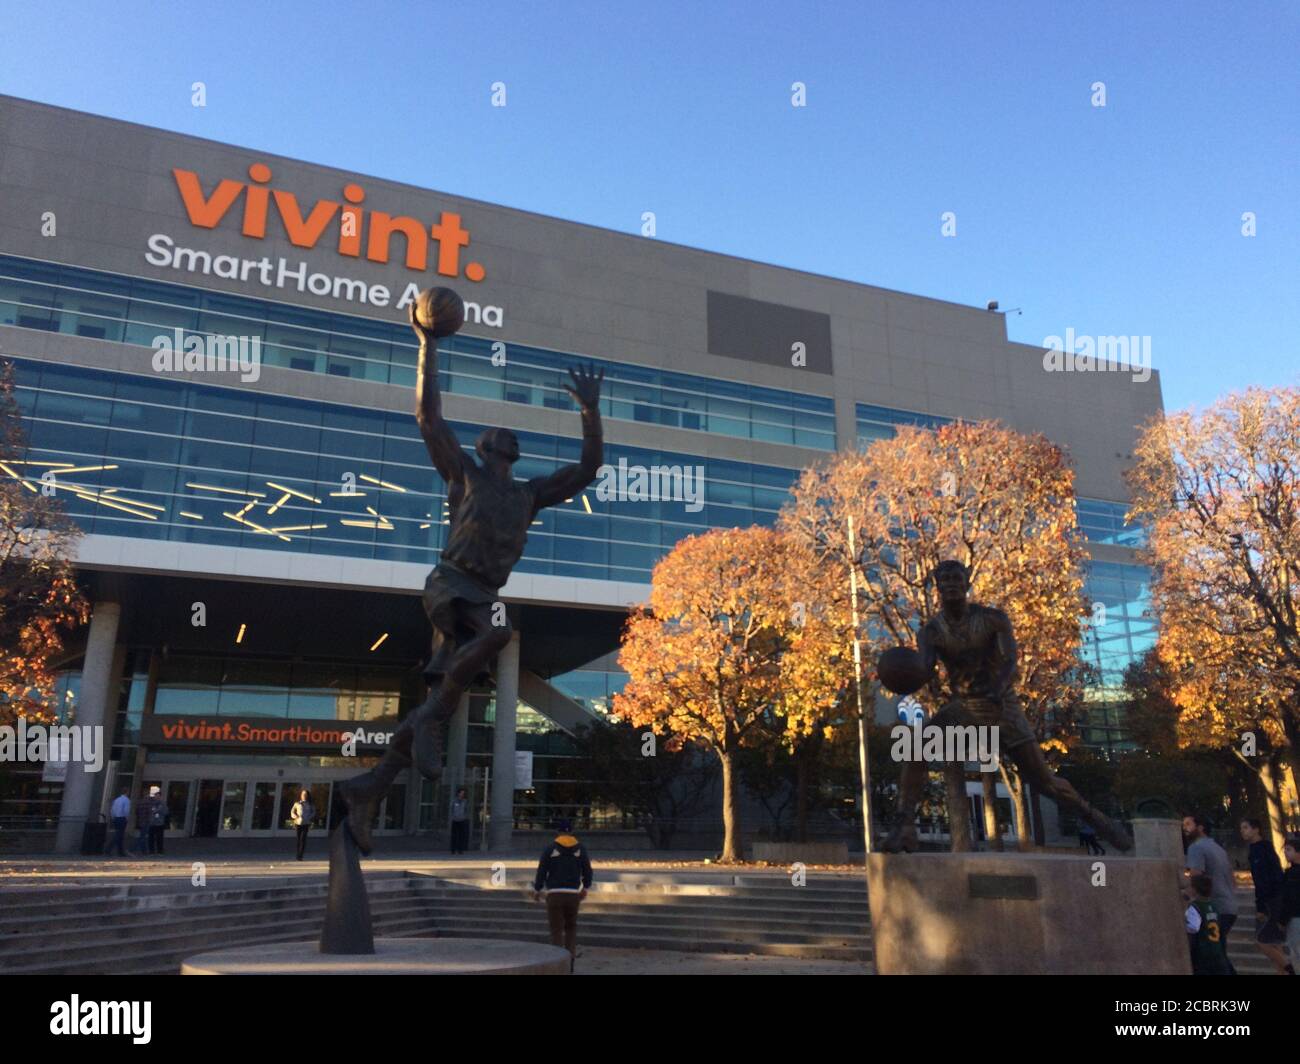 Vivint Smart Home Arena. NBA Basketball-Team Utah Jazz spielen Heimspiele in dieser Arena. Clublegenden Karl Malone und John Stockton Statuen. Stockfoto